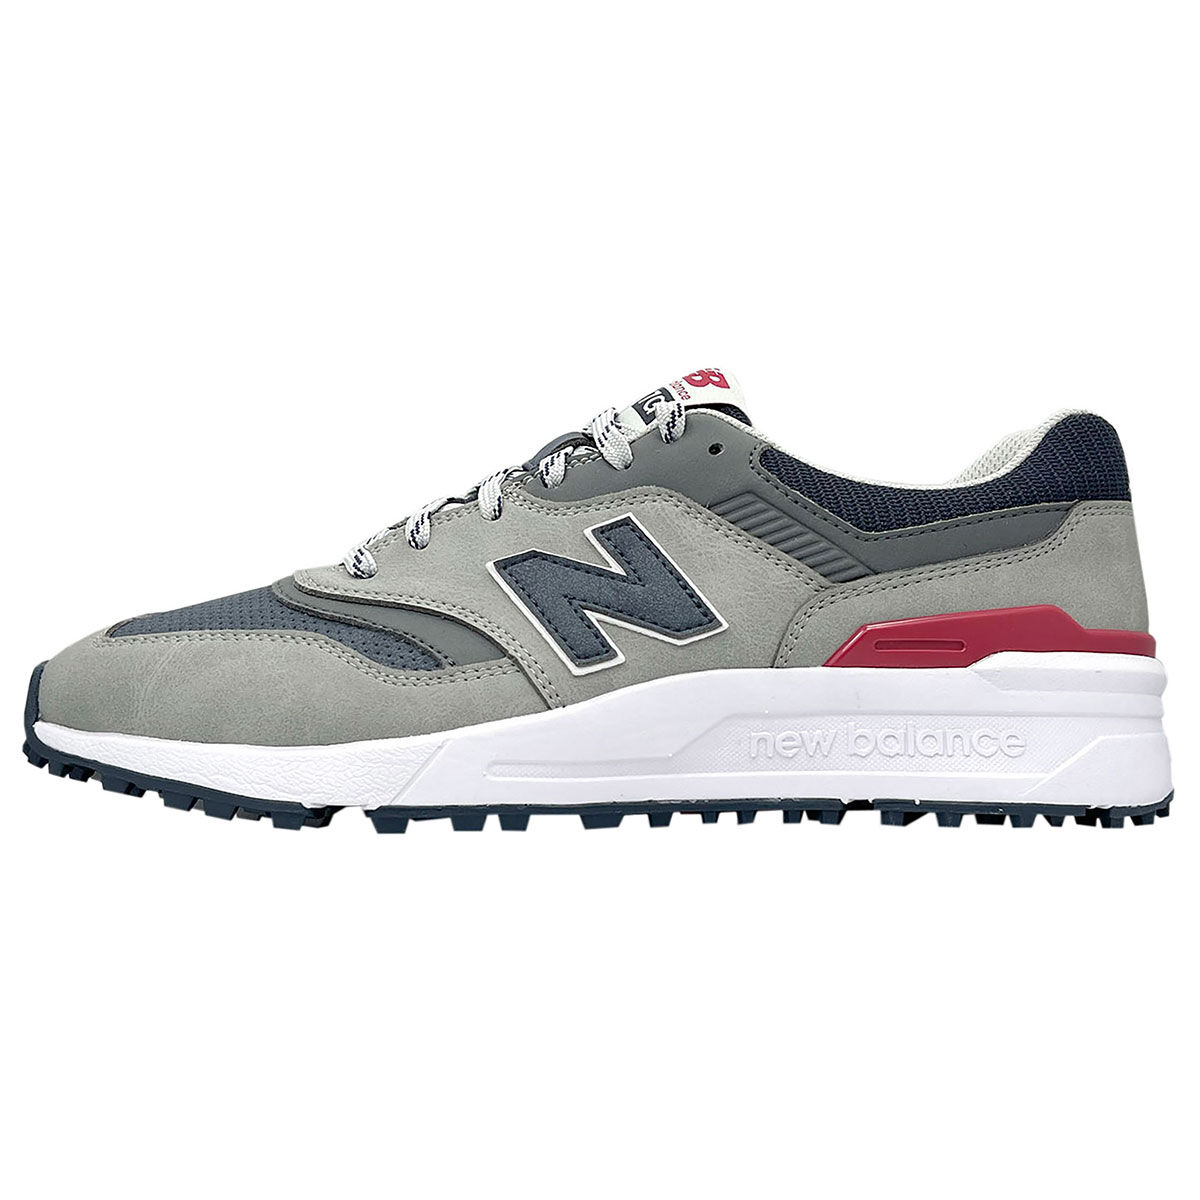 New Balance Men’s 997 Waterproof Spikeless Golf Shoes, Mens, Grey/navy, 11 | American Golf